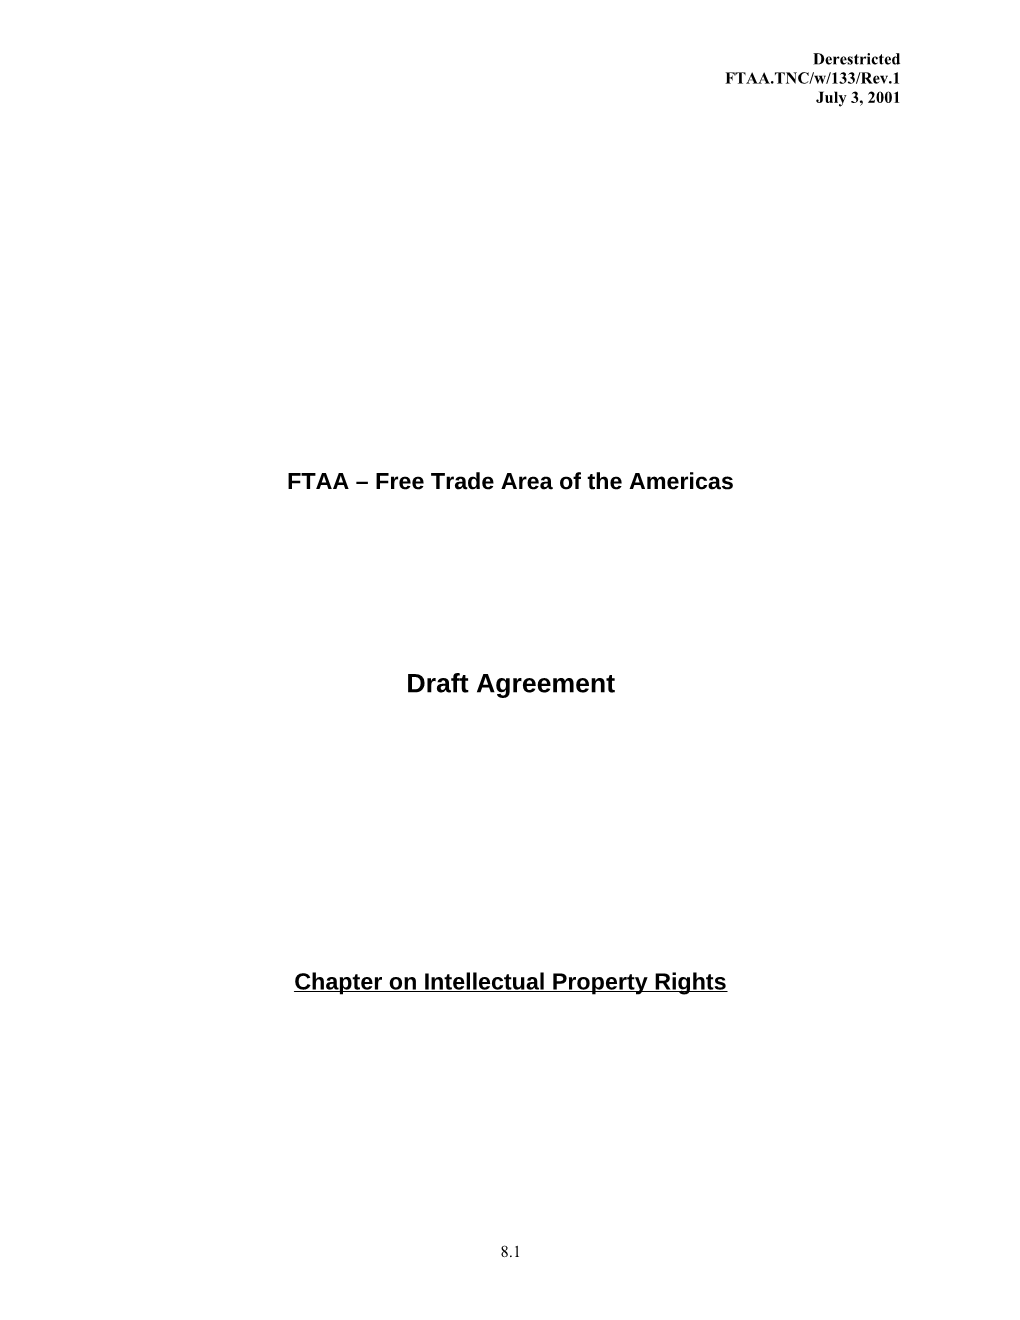 FTAA.TNC/W/133/Rev.1 3 July 2001 First FTAA Draft Agreement